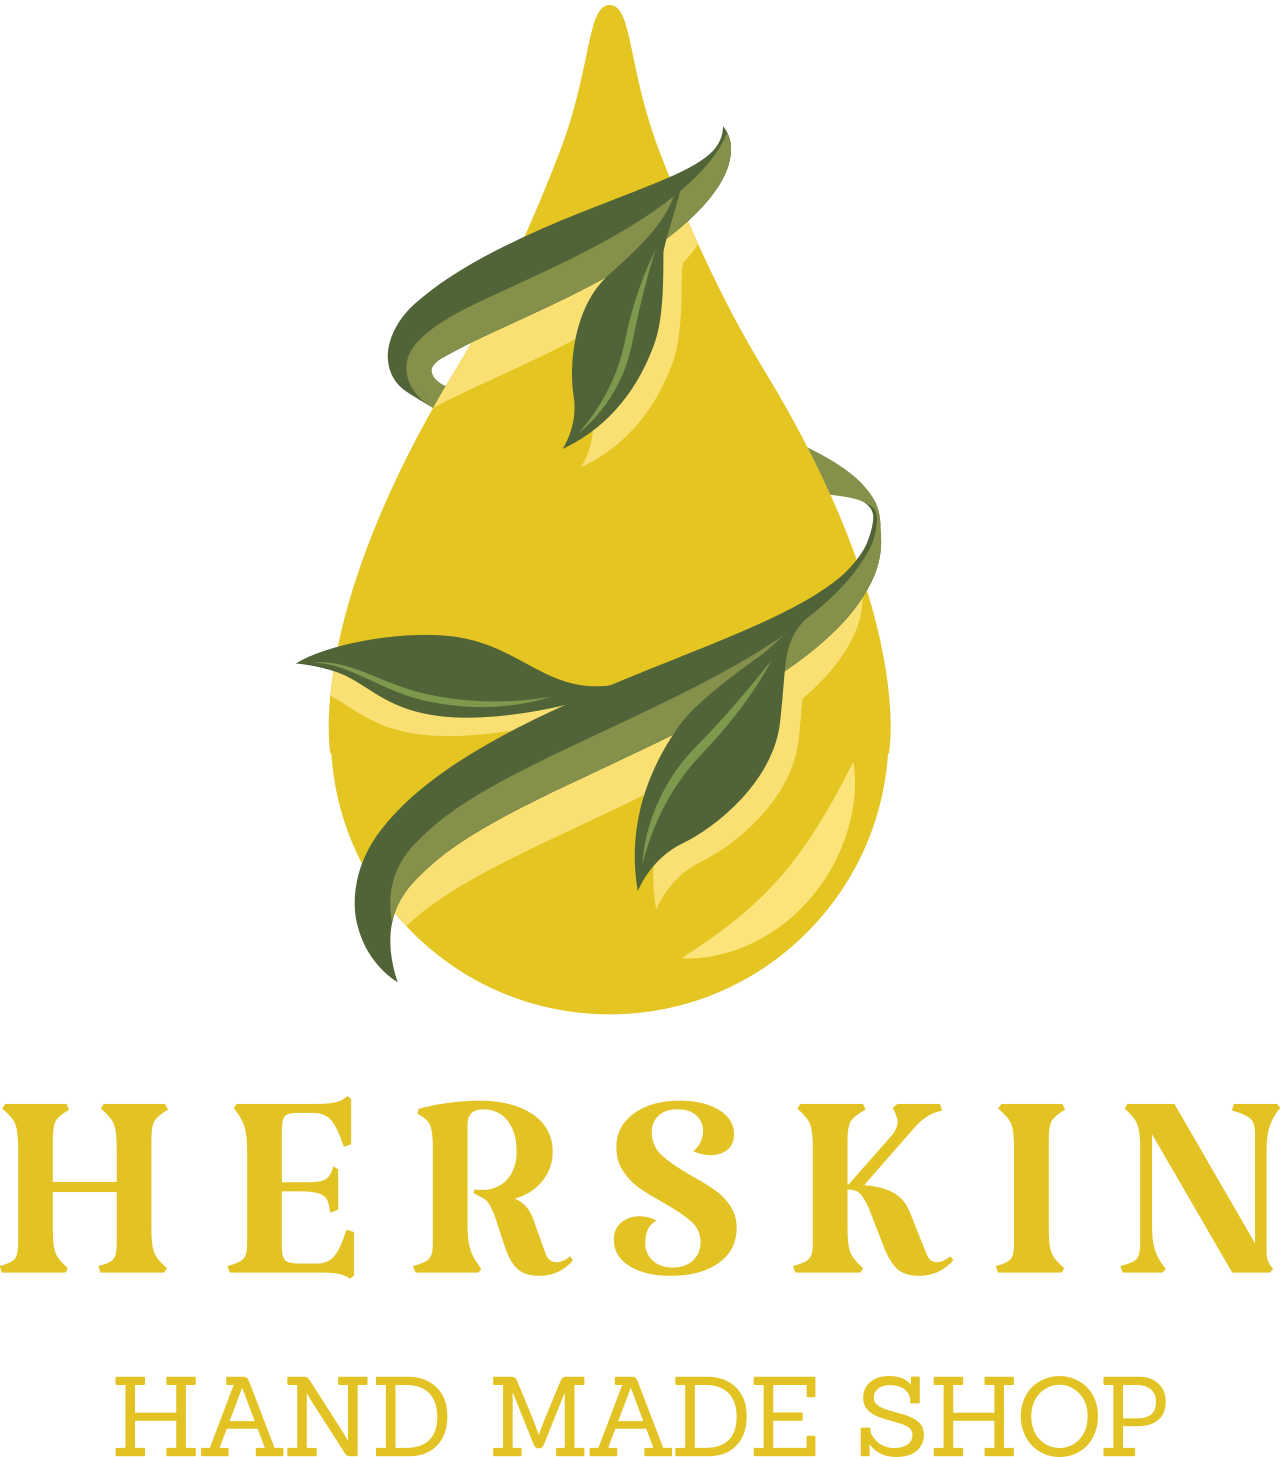 HerSkin's logo